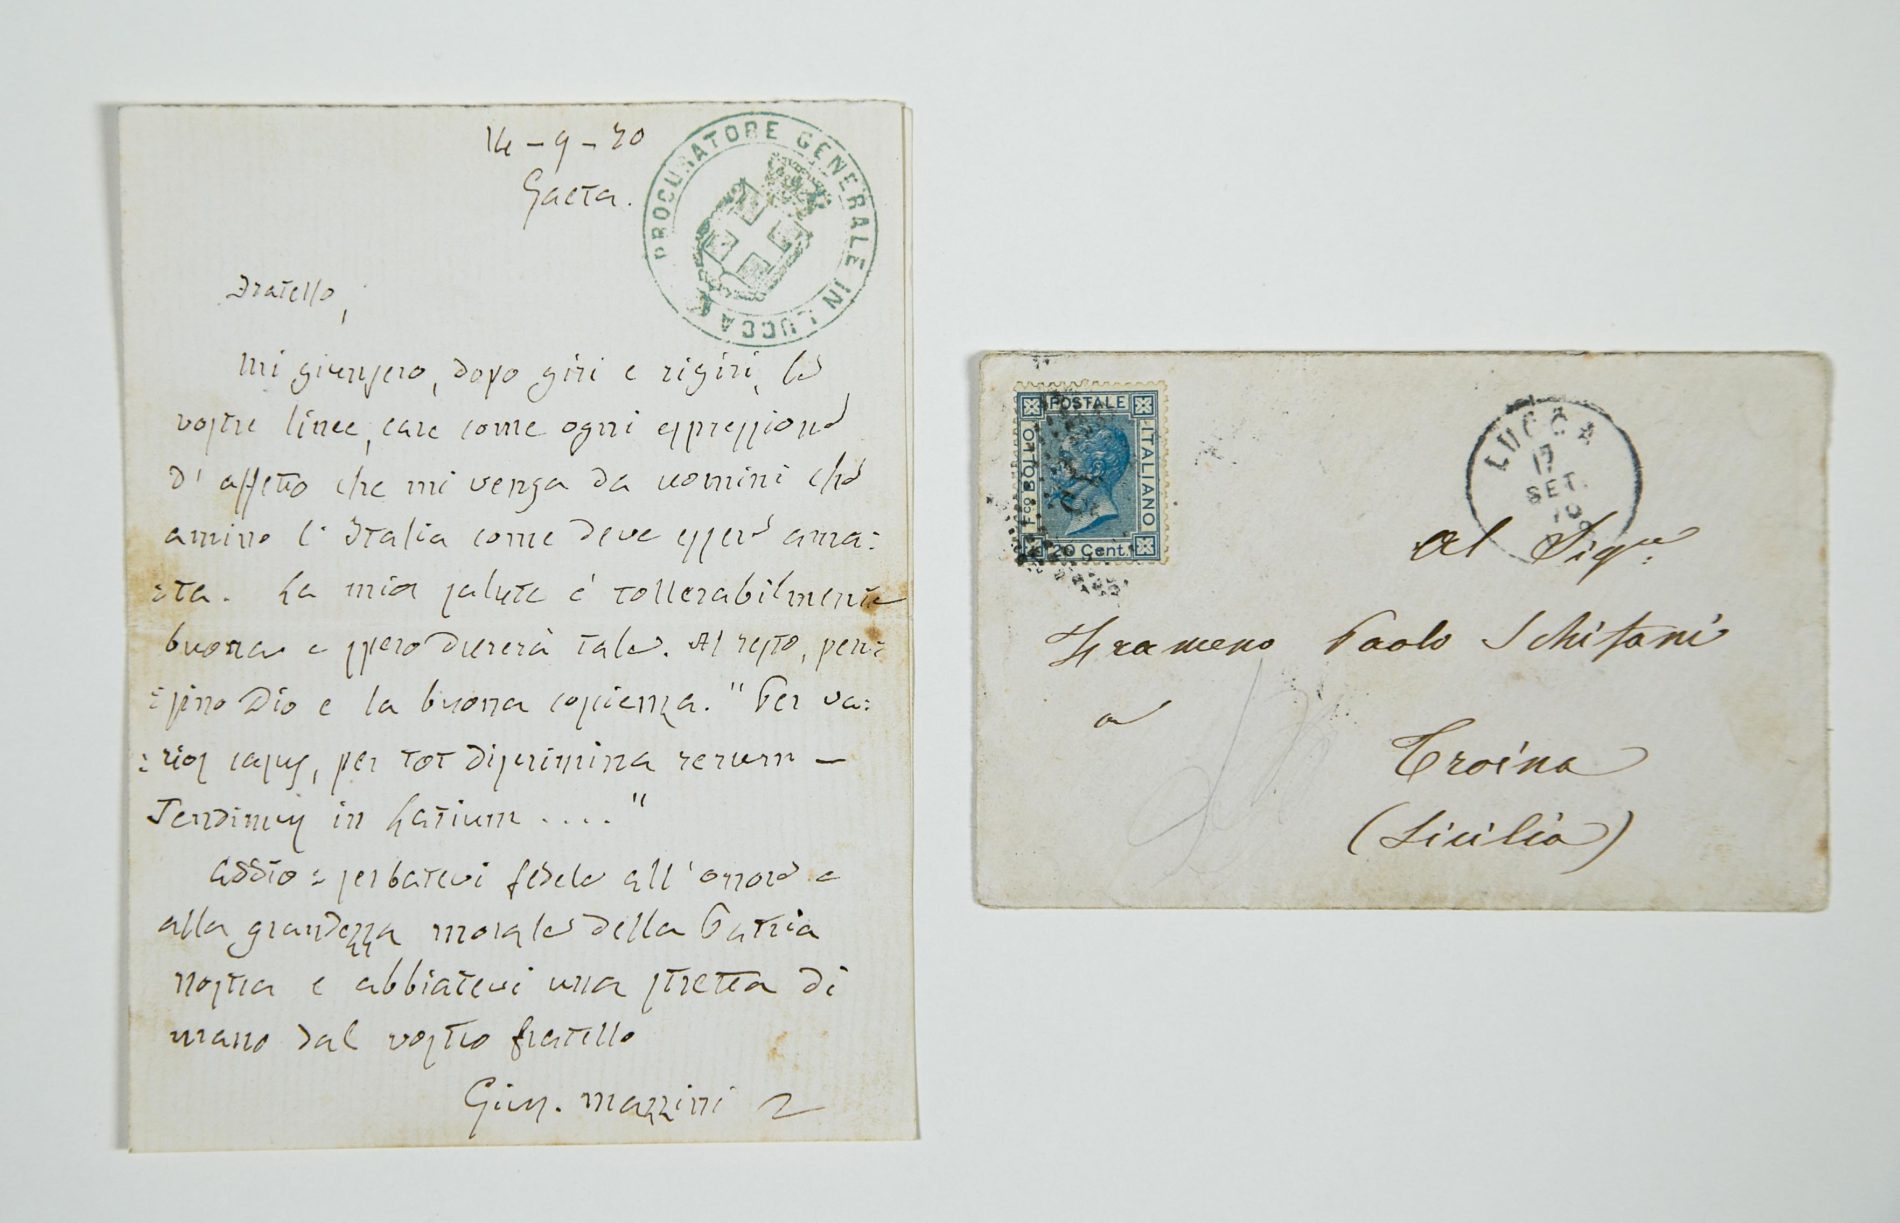 Scoperto a Troina un archivio con lettere inedite di Mazzini e Garibaldi: nel cuore della Sicilia nascerà un museo del Risorgimento